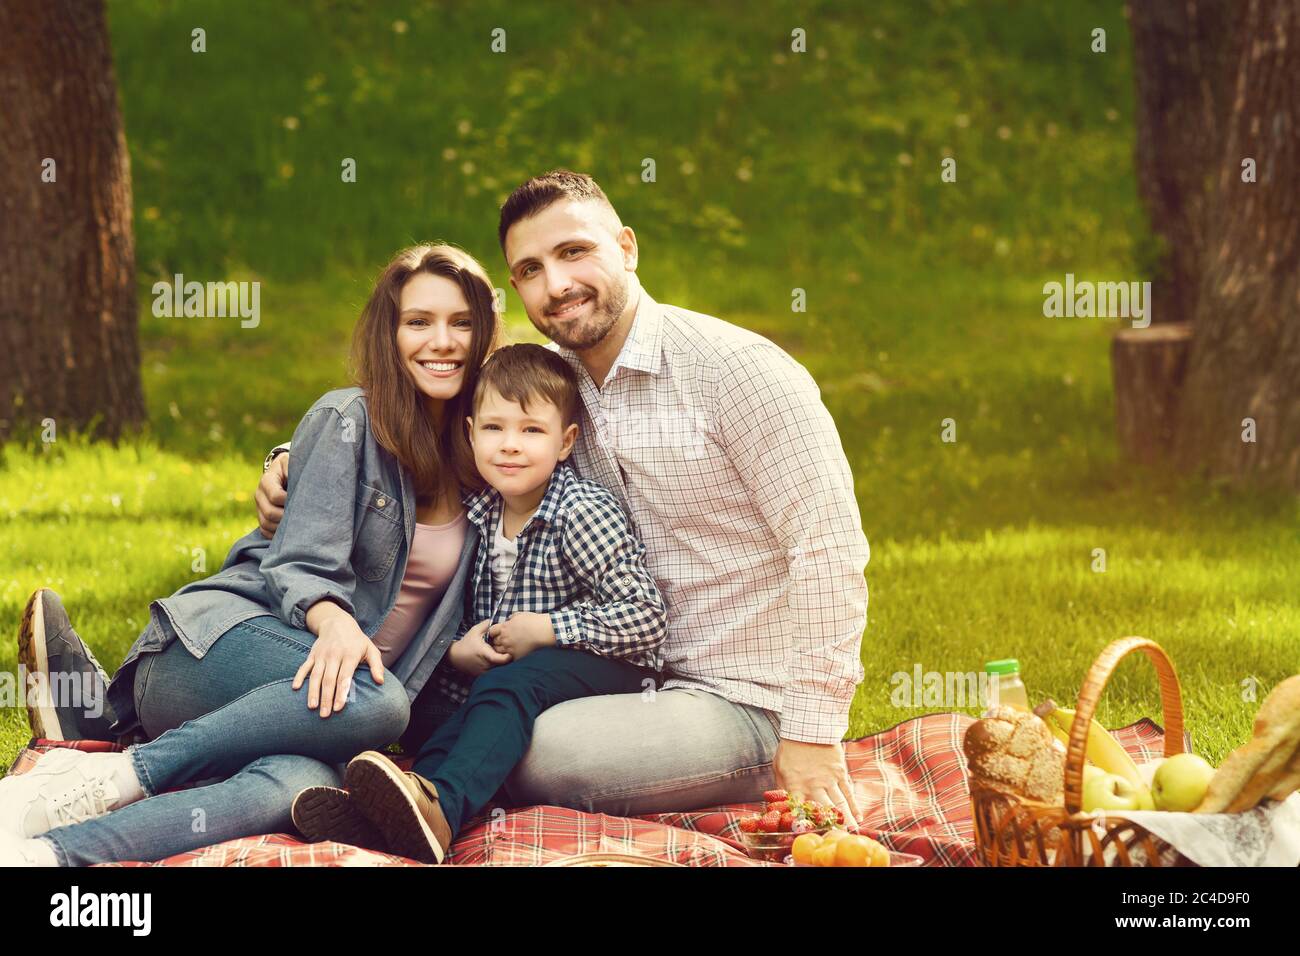 Famille heureuse avec un enfant mignon en train de profiter de son temps sur pique-nique dans le parc, espace vierge Banque D'Images